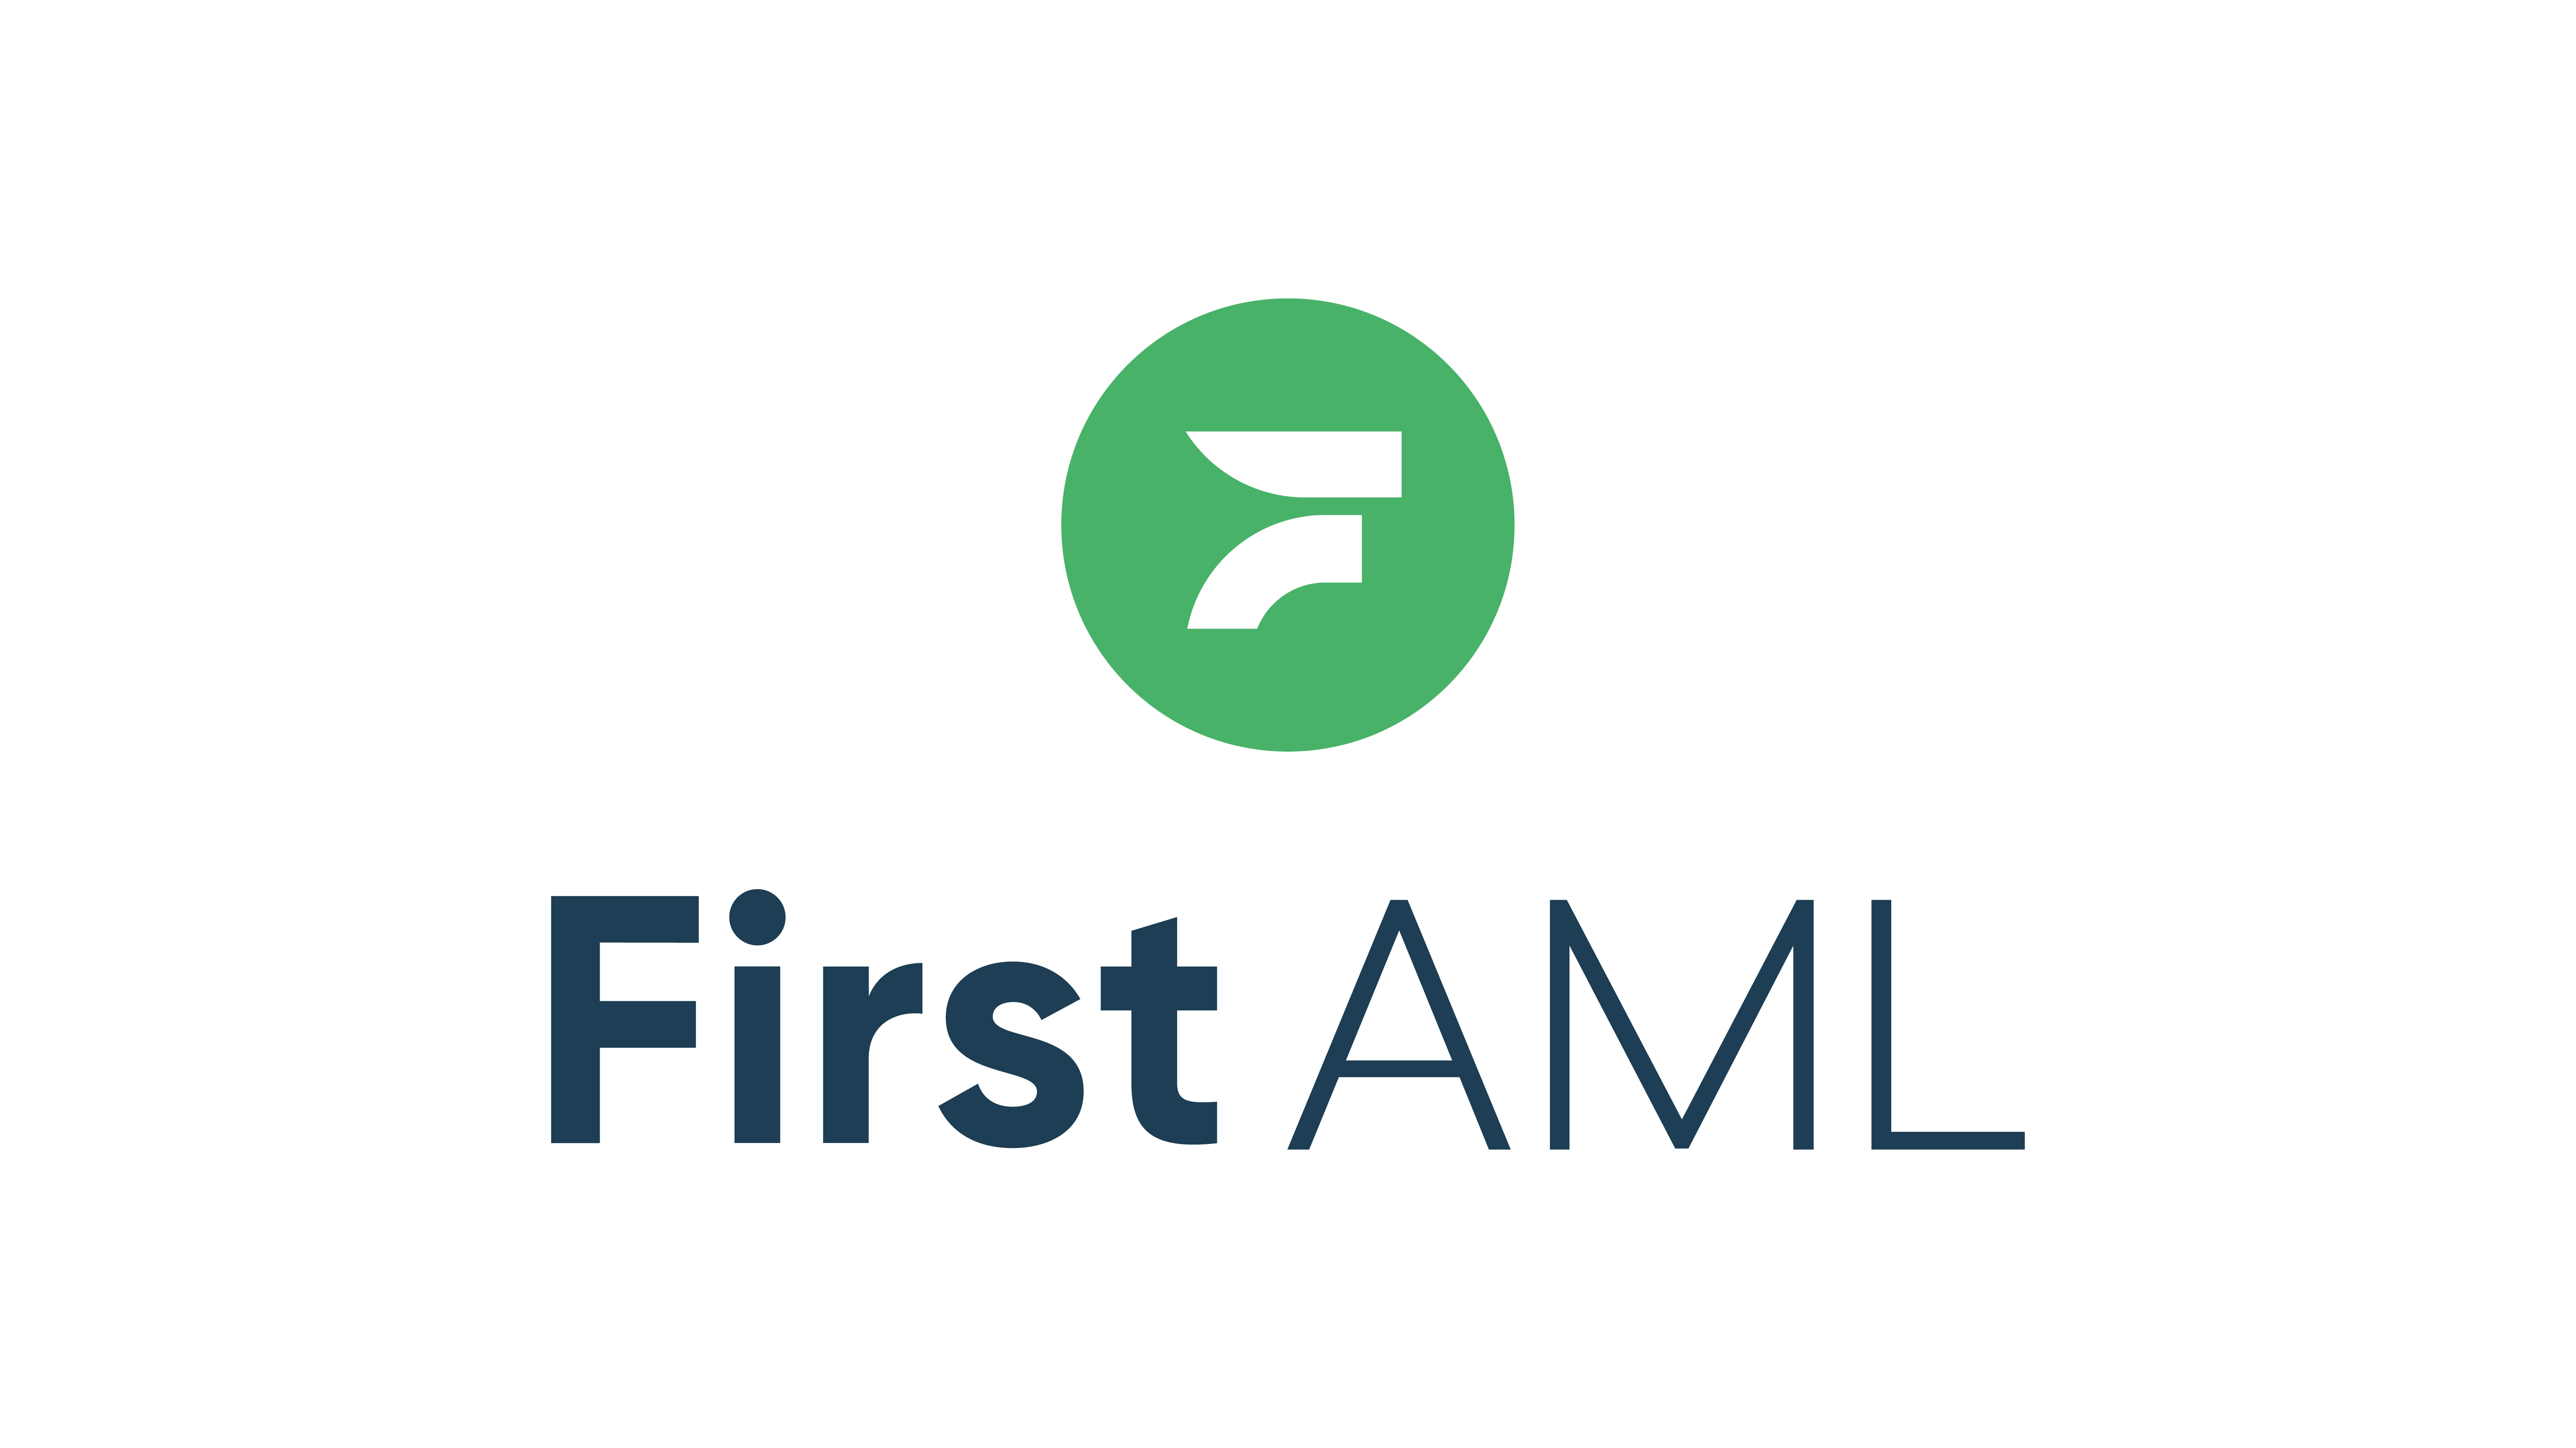 First AML's logo